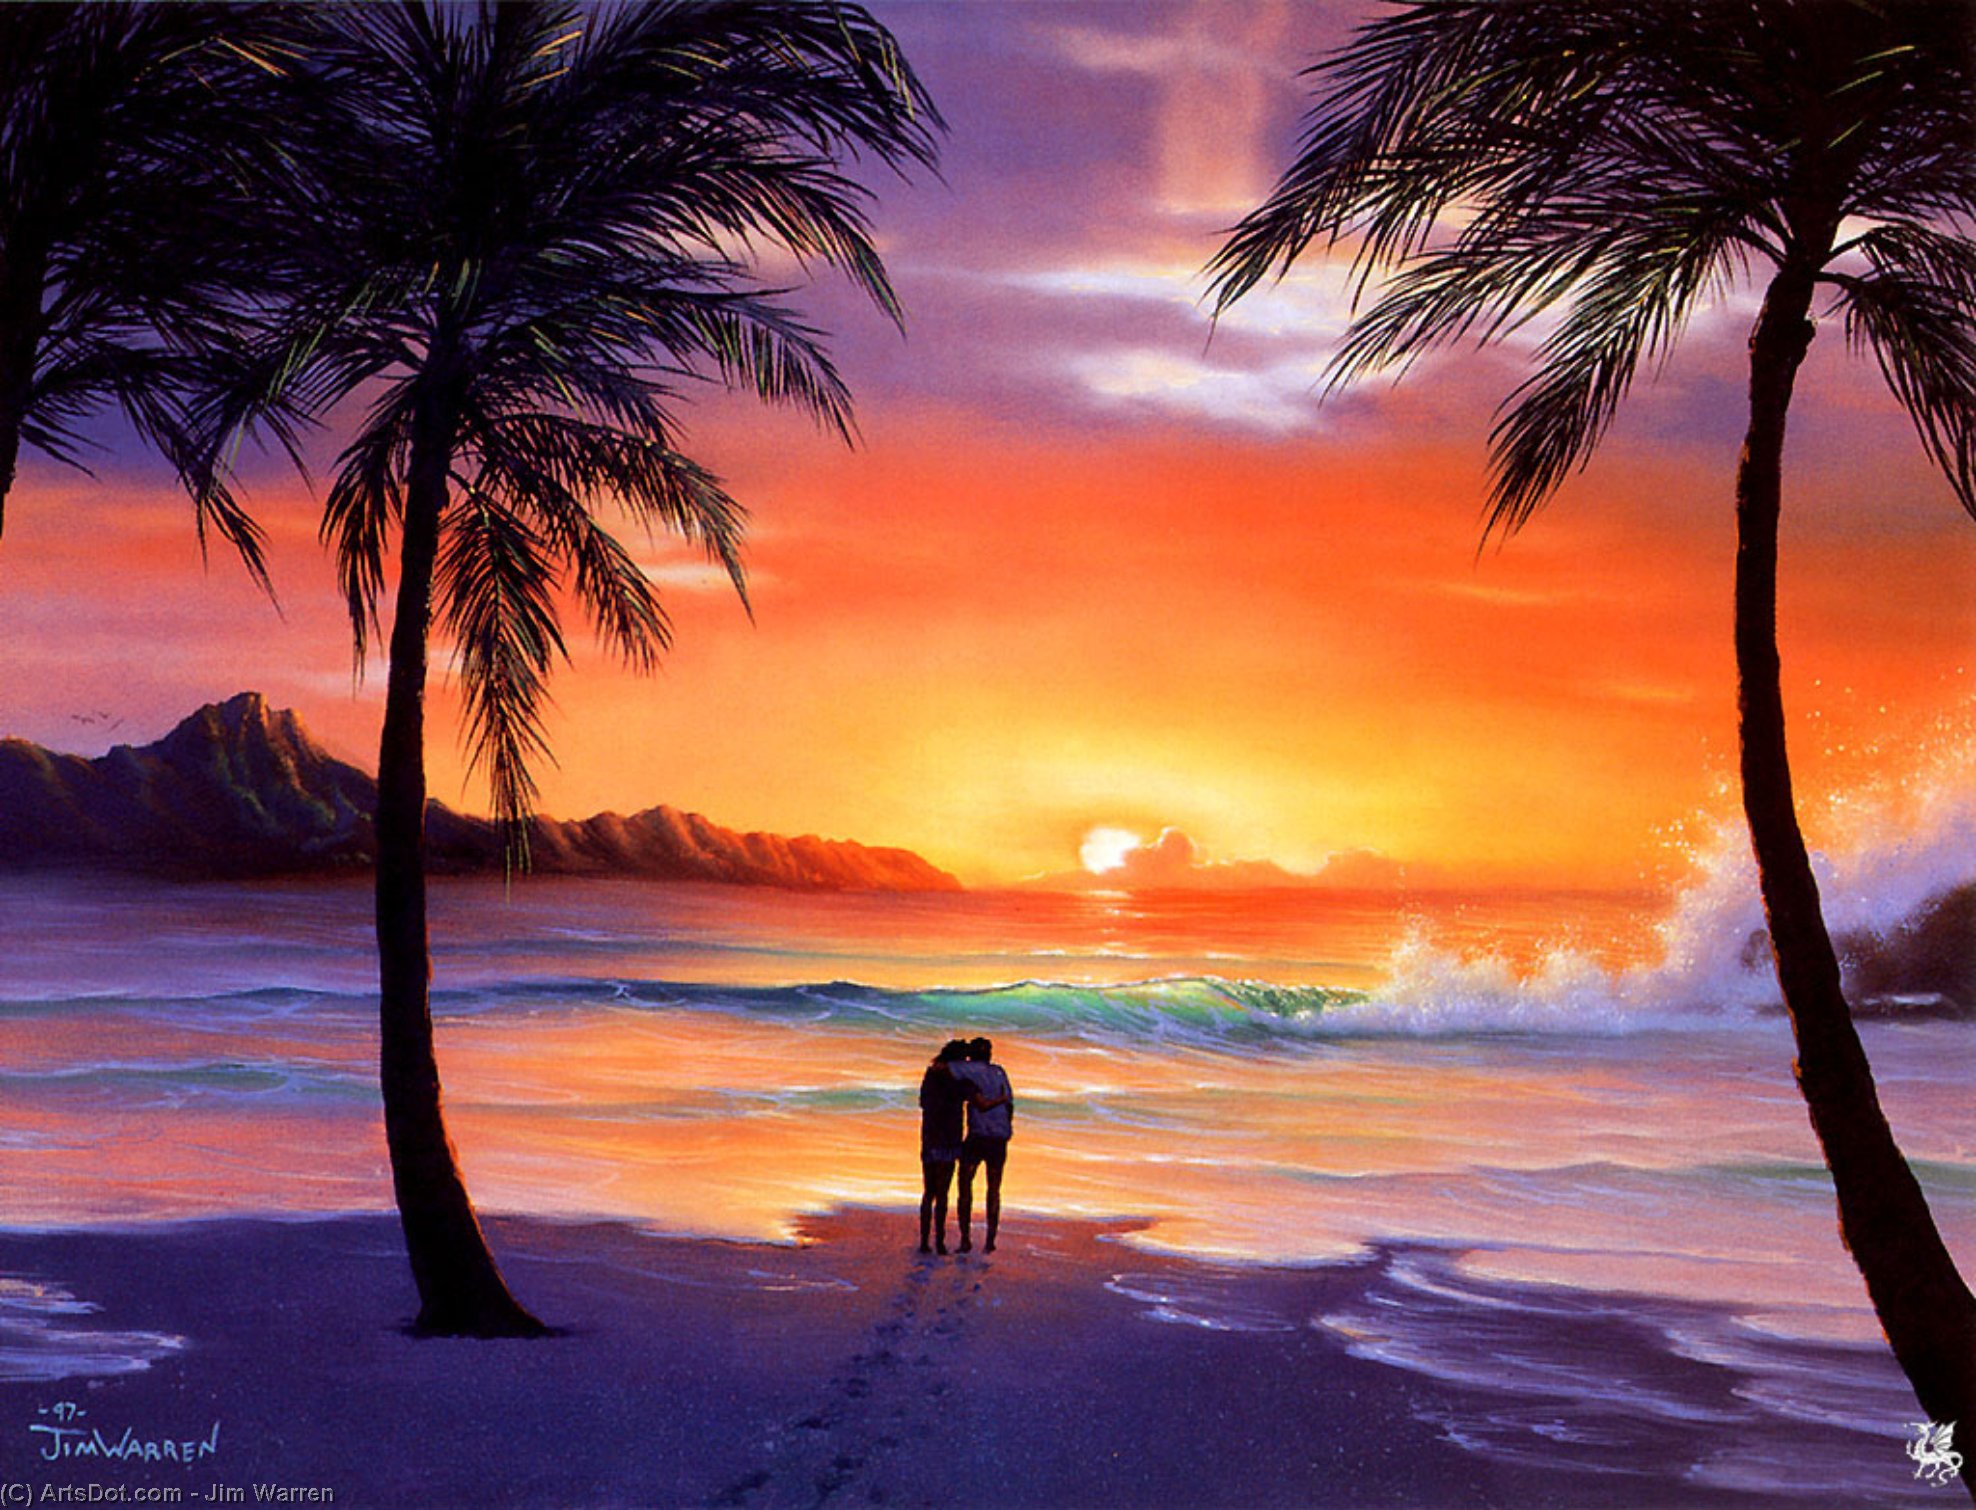 WikiOO.org - Güzel Sanatlar Ansiklopedisi - Resim, Resimler Jim Warren - Romantic sunset